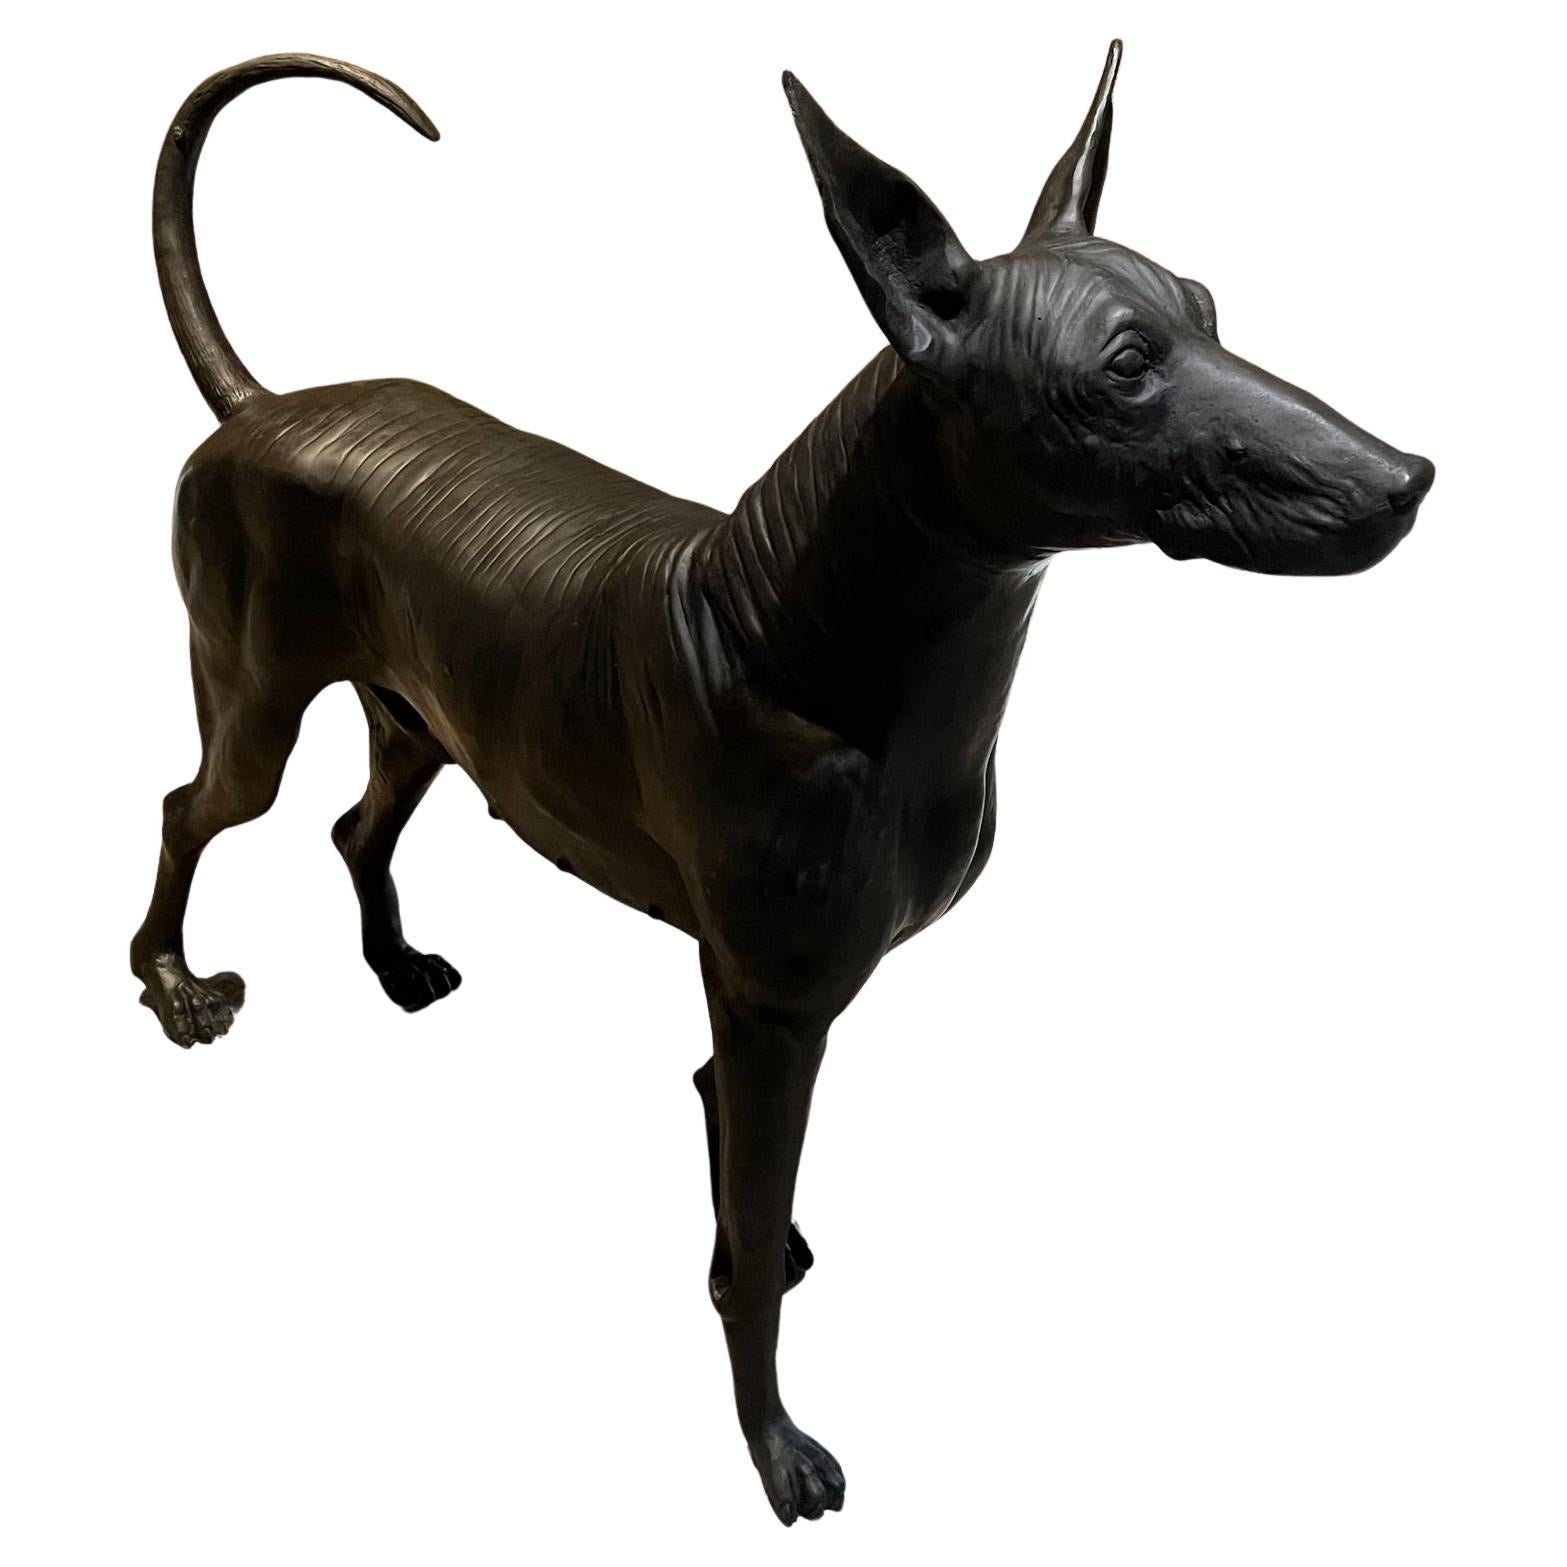 Xolo Hairless Dog Bronze Sculpture Master Sculptor Guillermo Castaño Mexico 2008